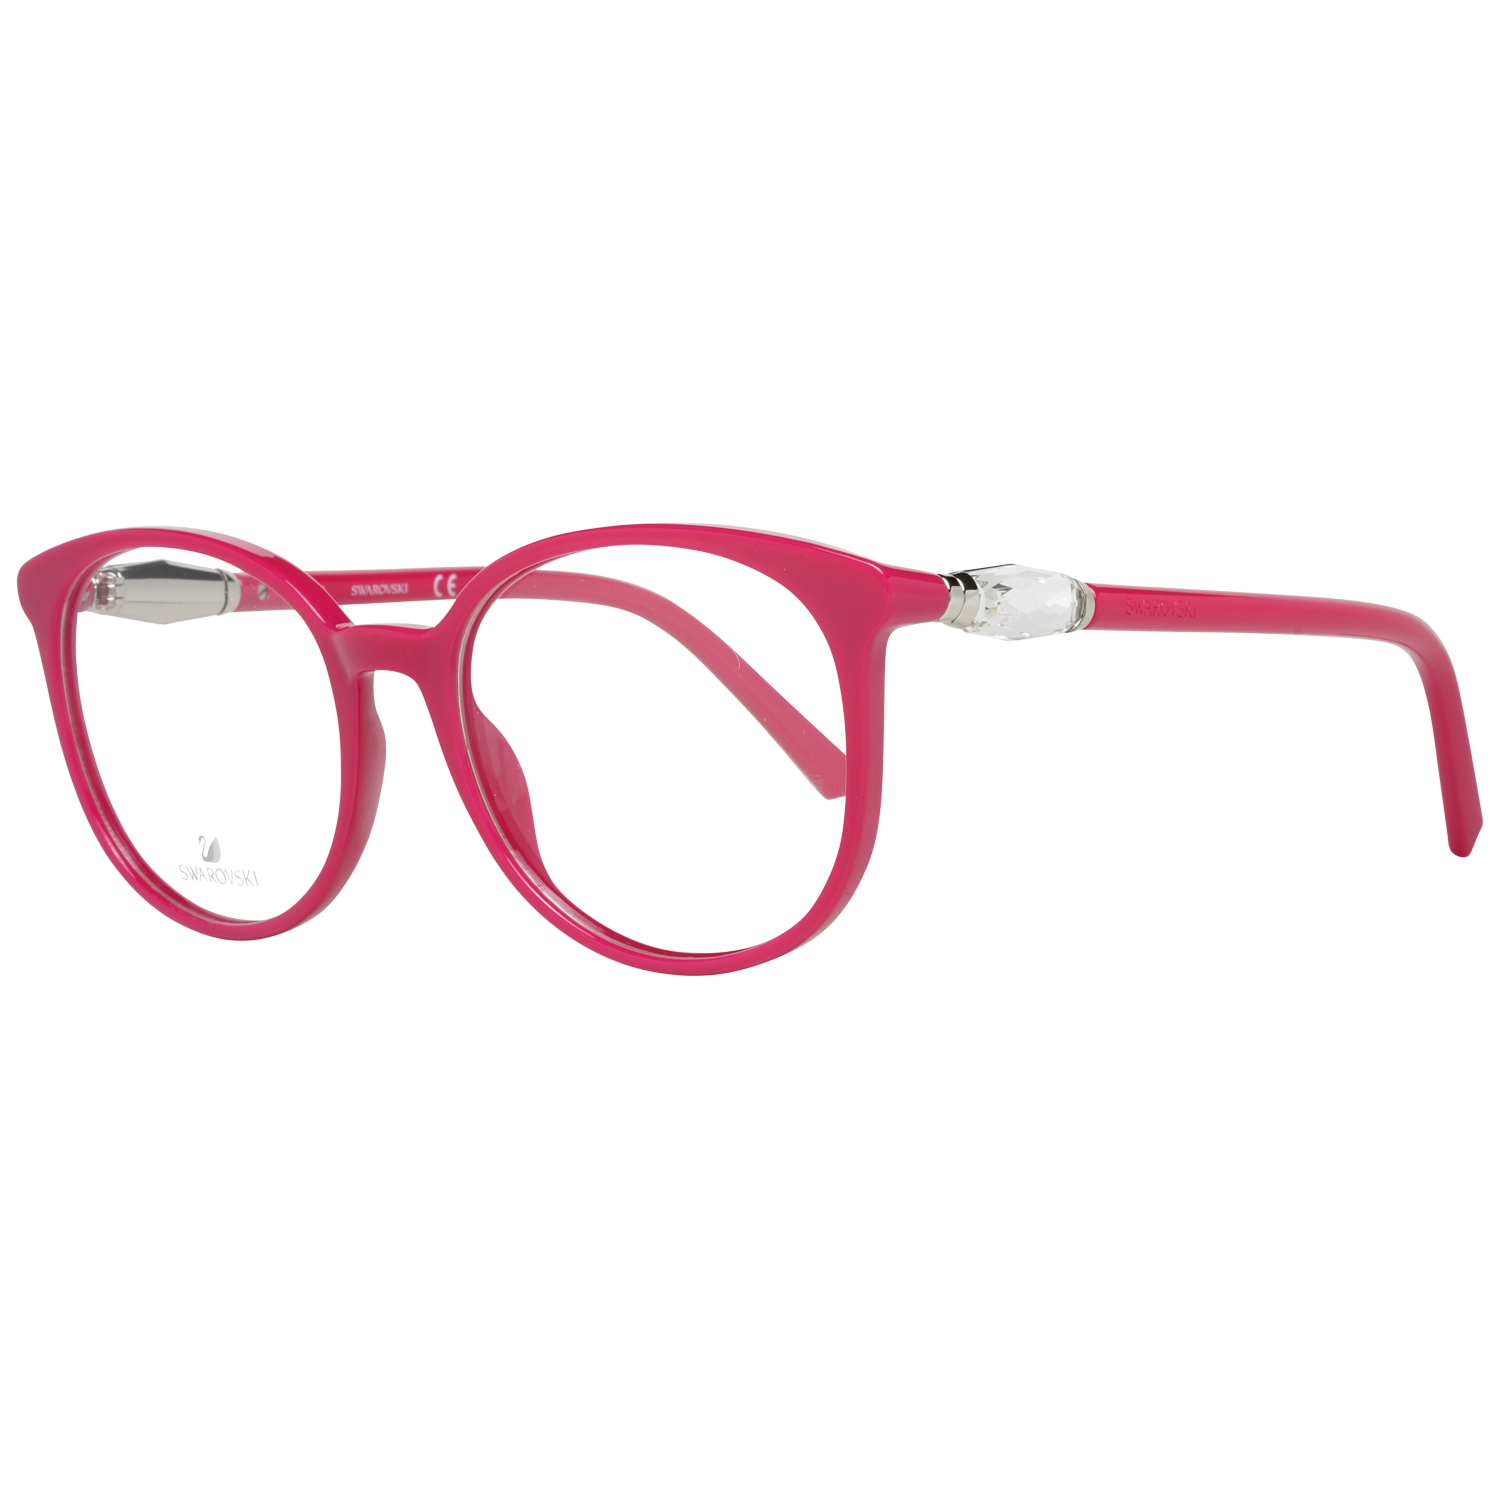 Swarovski Frames Swarovski Women Glasses Optical Frame SK5310 075 52 Eyeglasses Eyewear UK USA Australia 